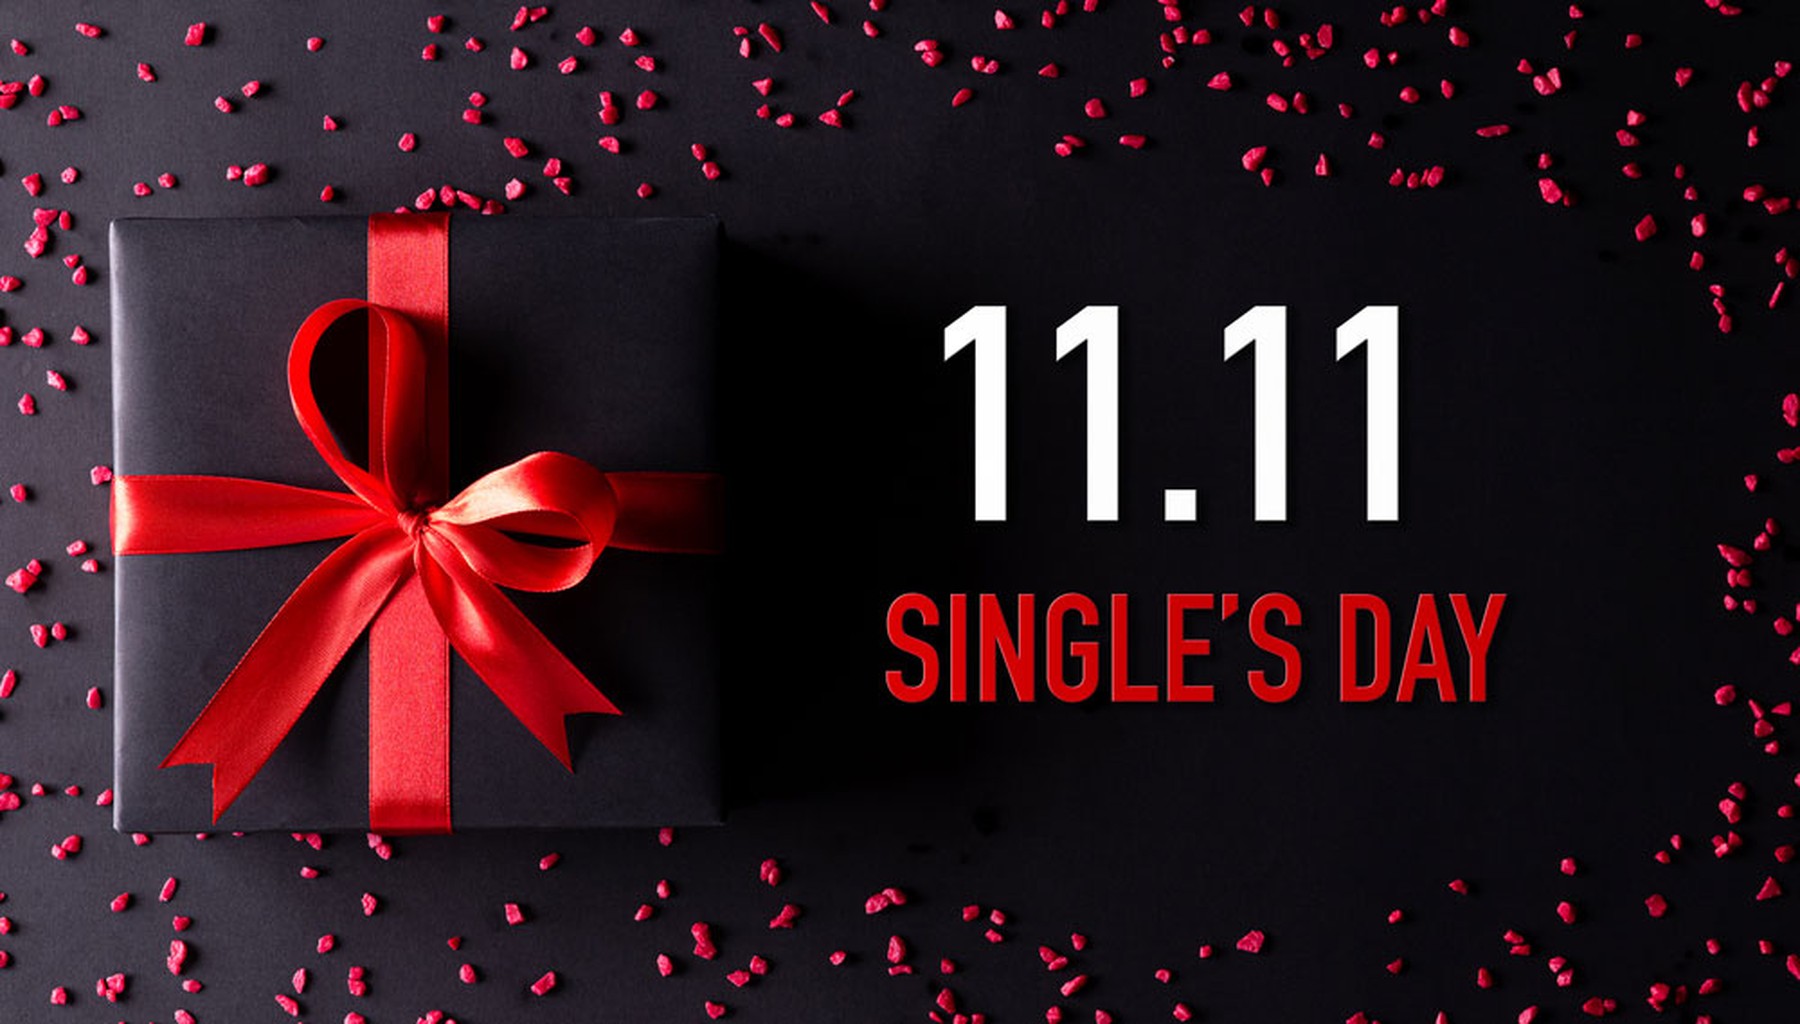 Fondo negro con piedras rojas y un paquete de regalo con un lazo rojo anunciando el 11.11 Single's Day